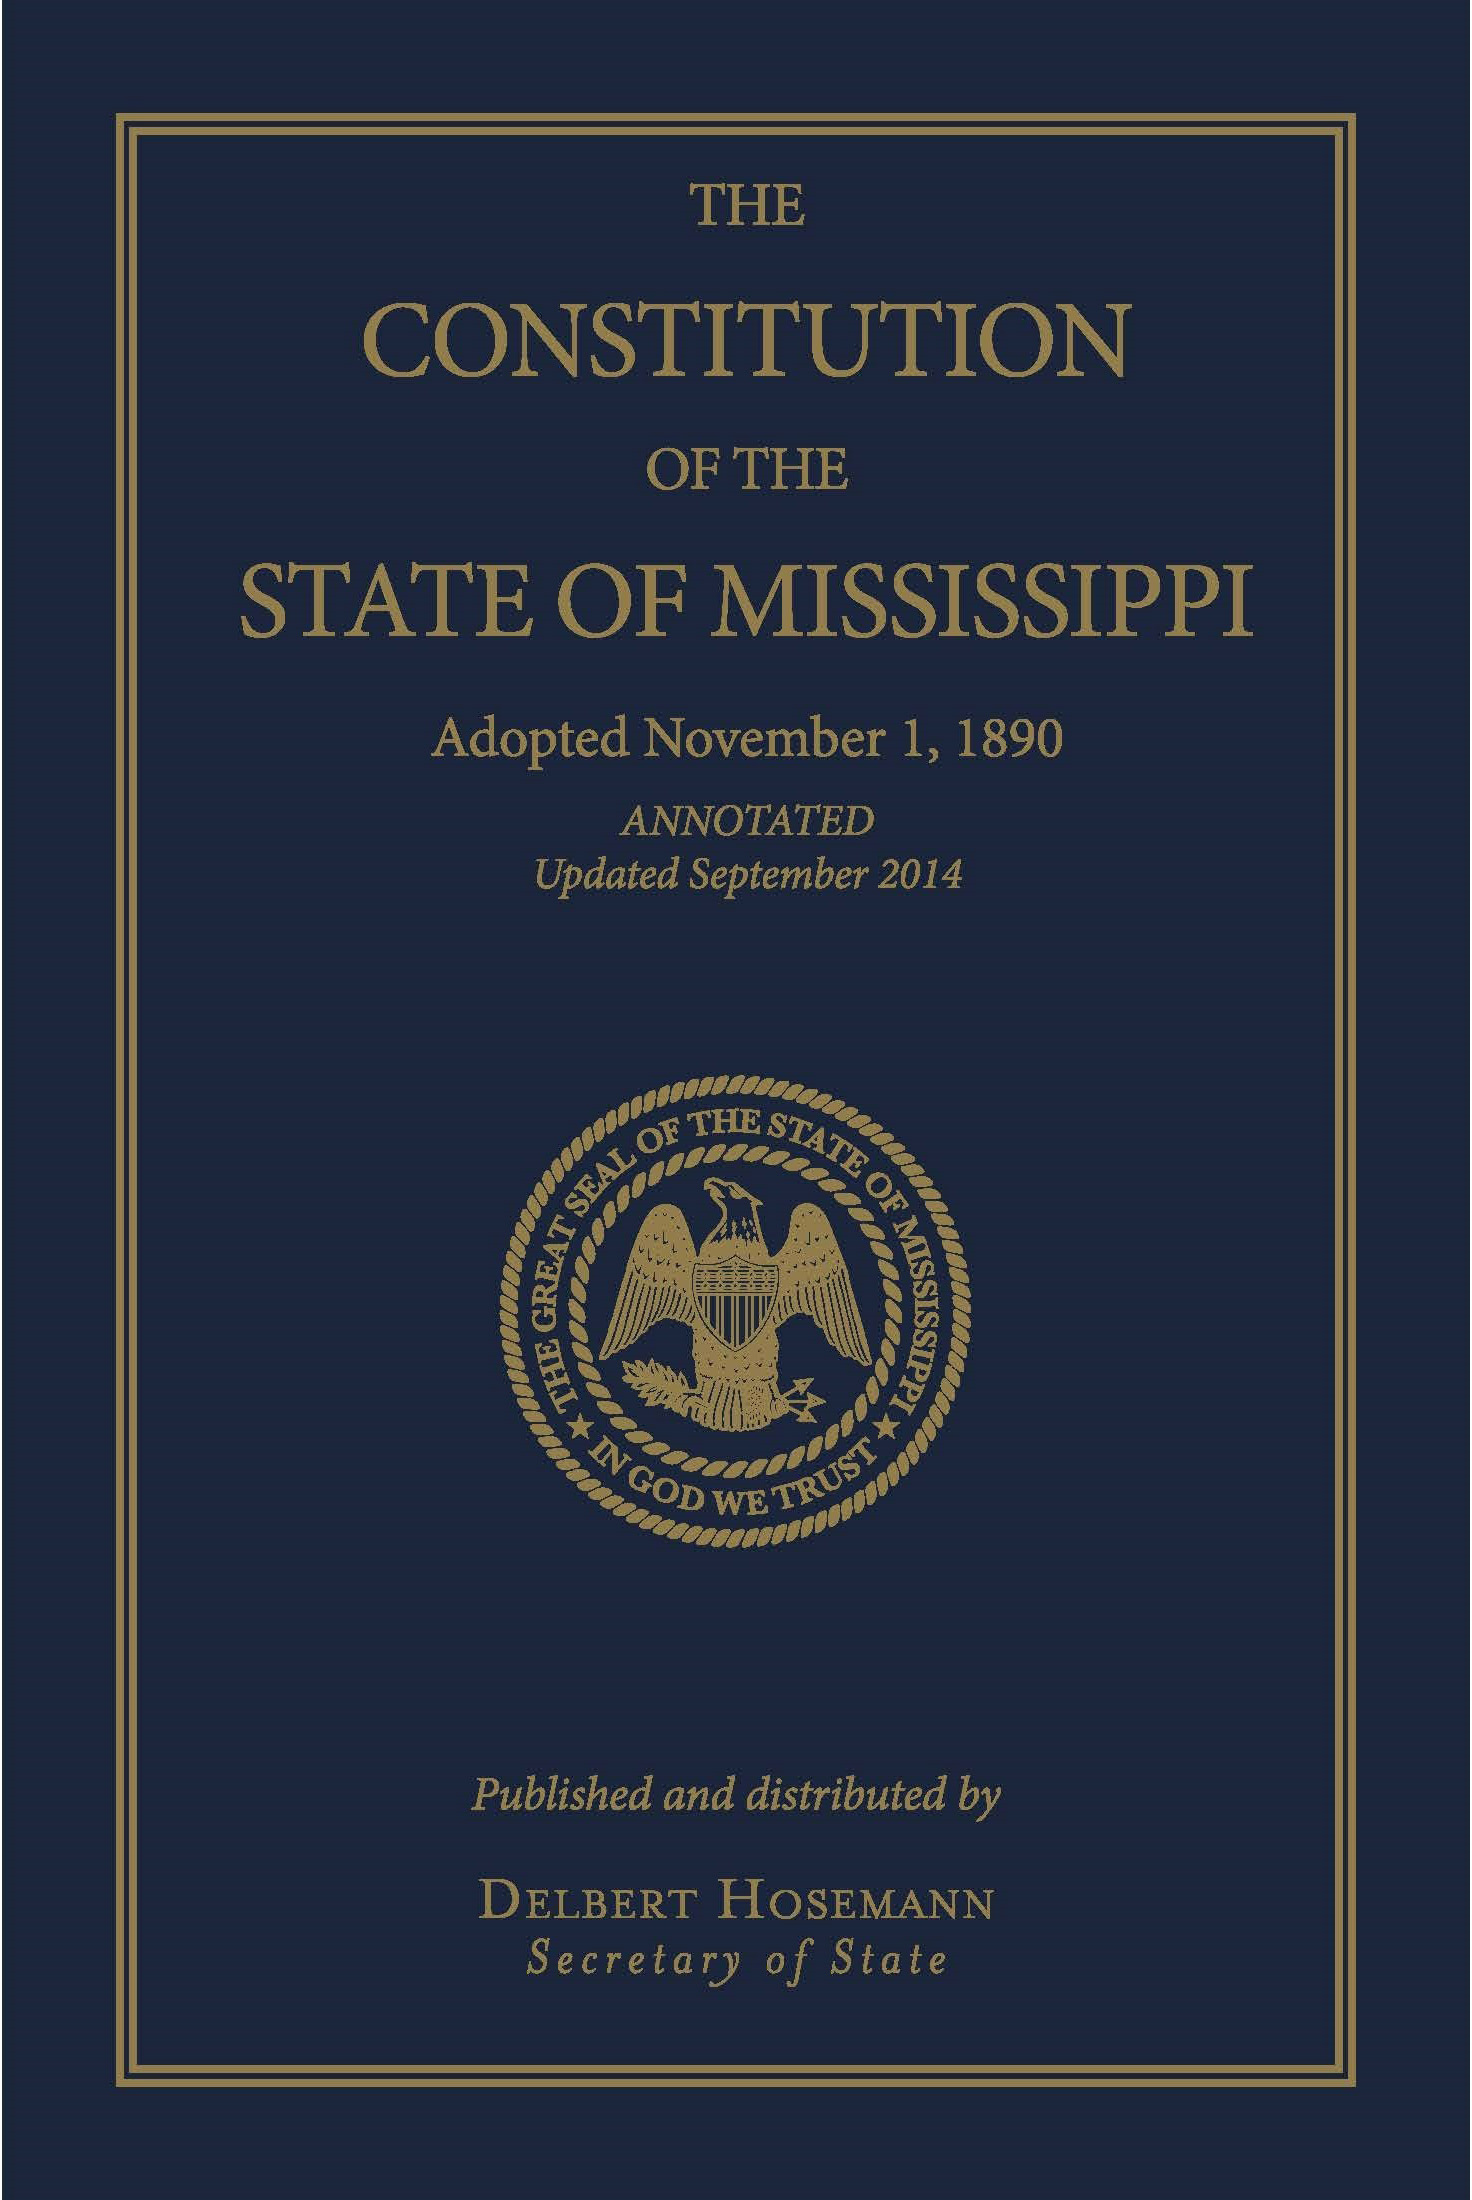 Mississippi Constitution